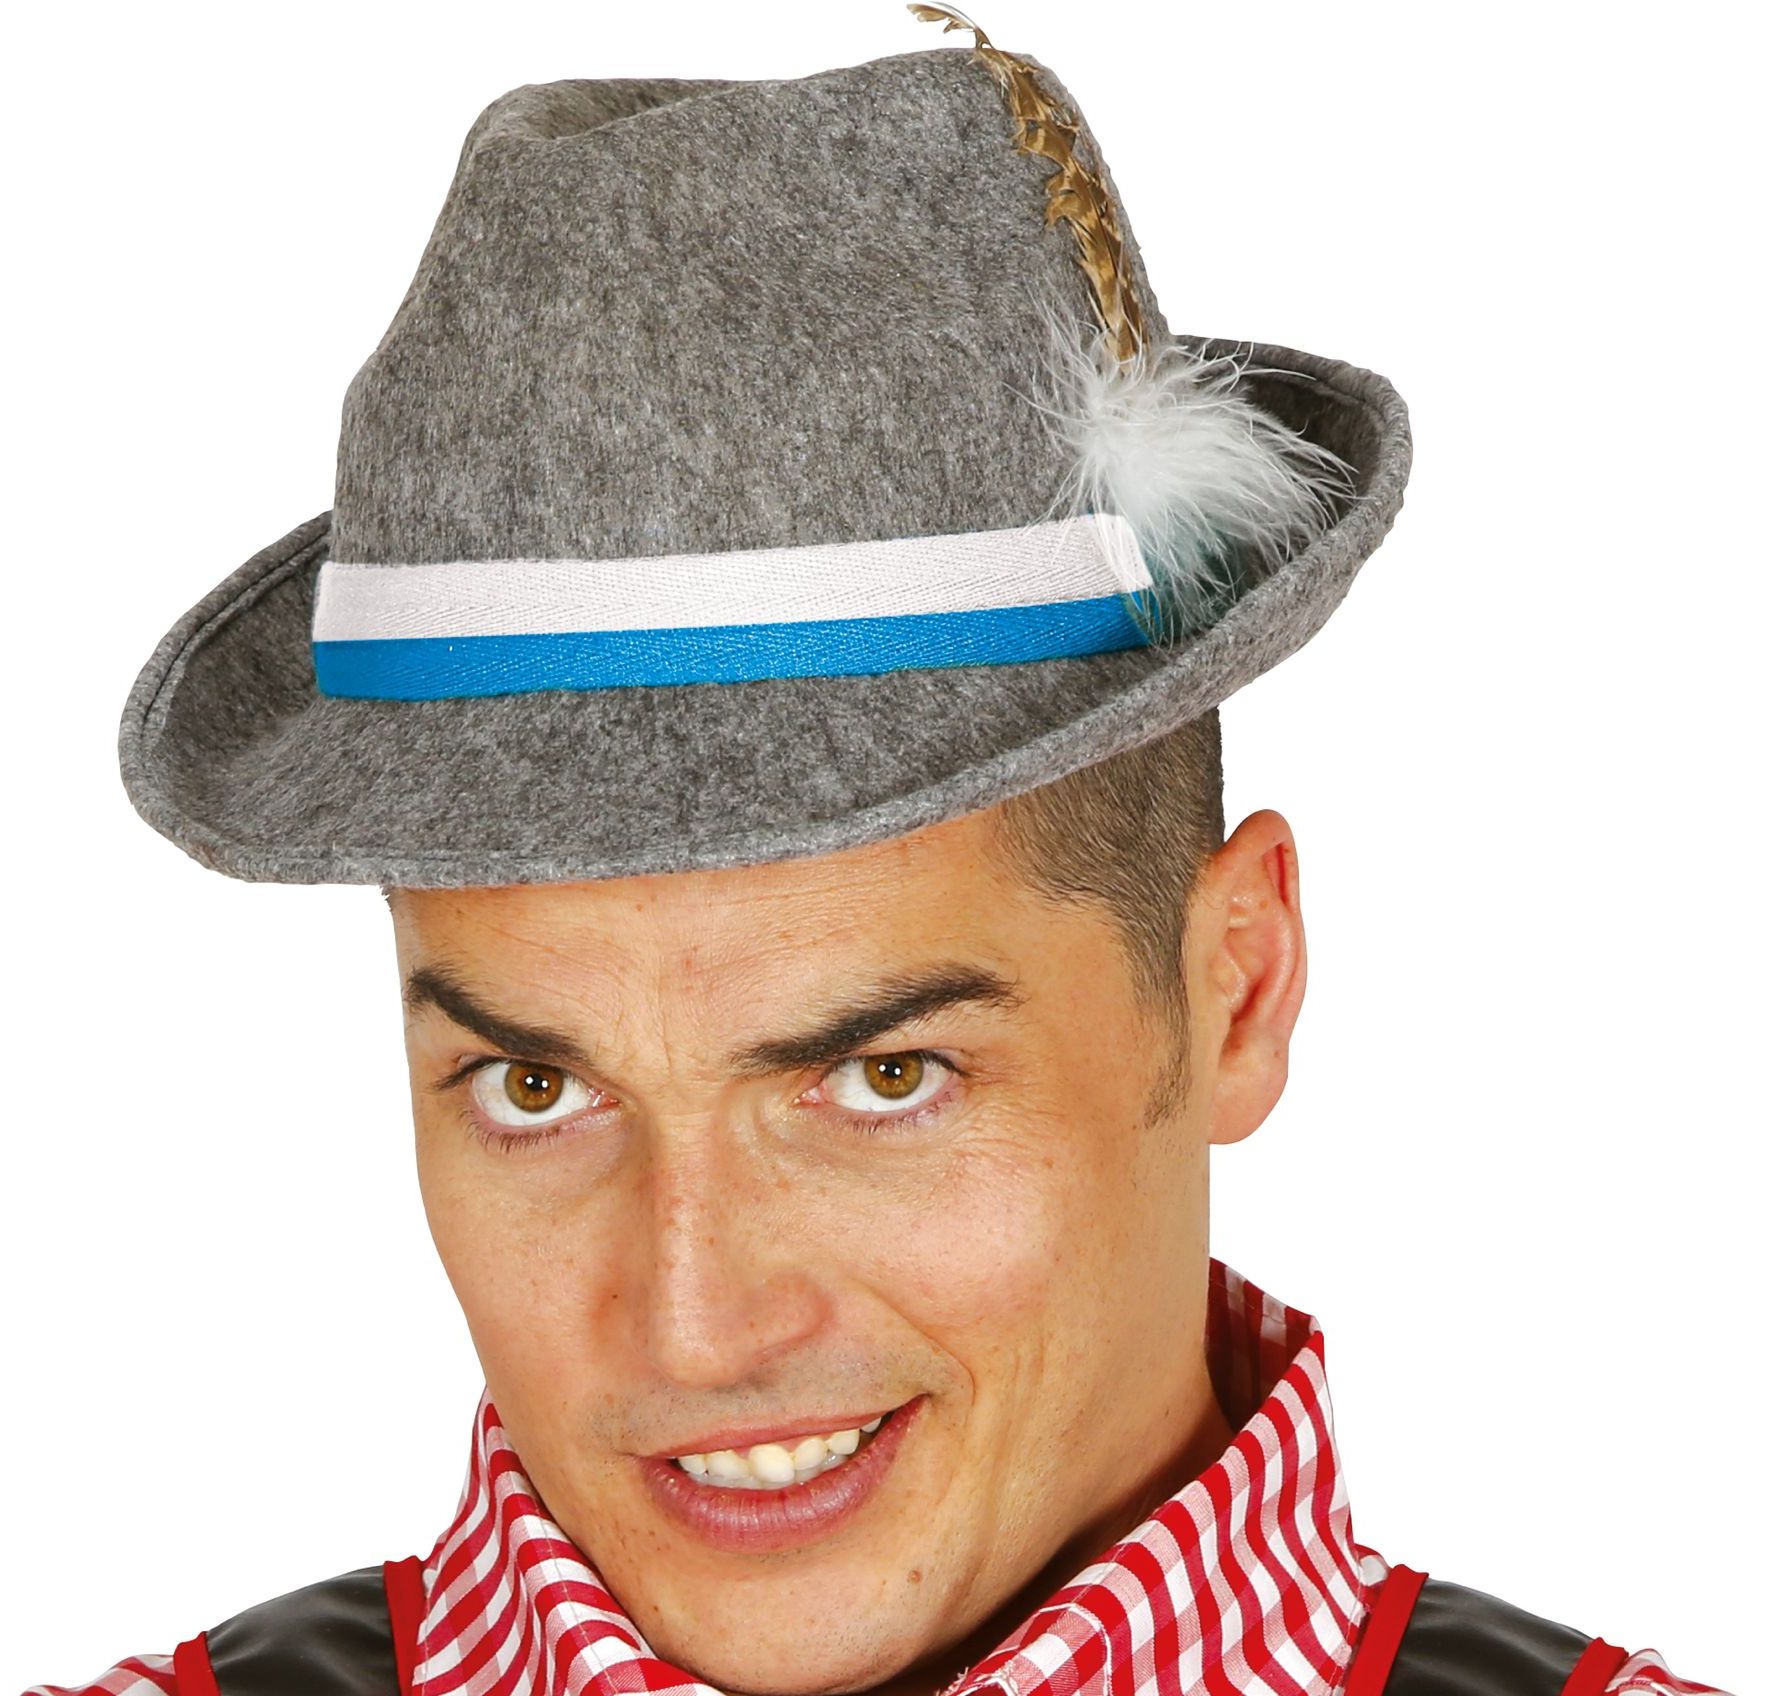 Luxe Tiroler Oktoberfest hoed